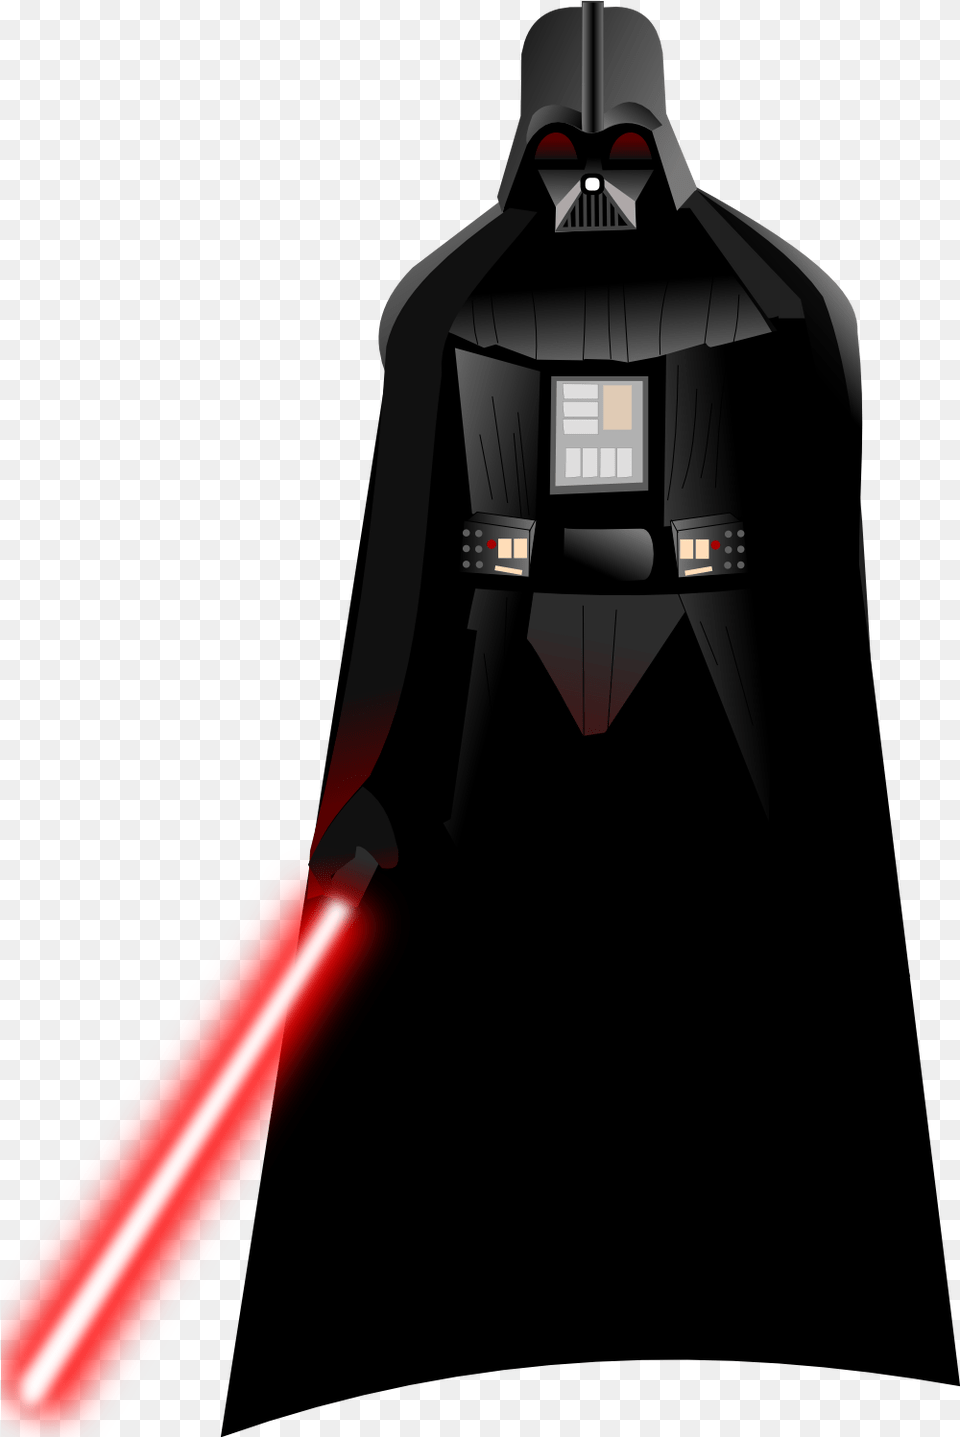 Anakin Skywalker Star Wars Clip Art Star Wars Darth Vader, Light, Lighting, Laser, Sword Free Transparent Png